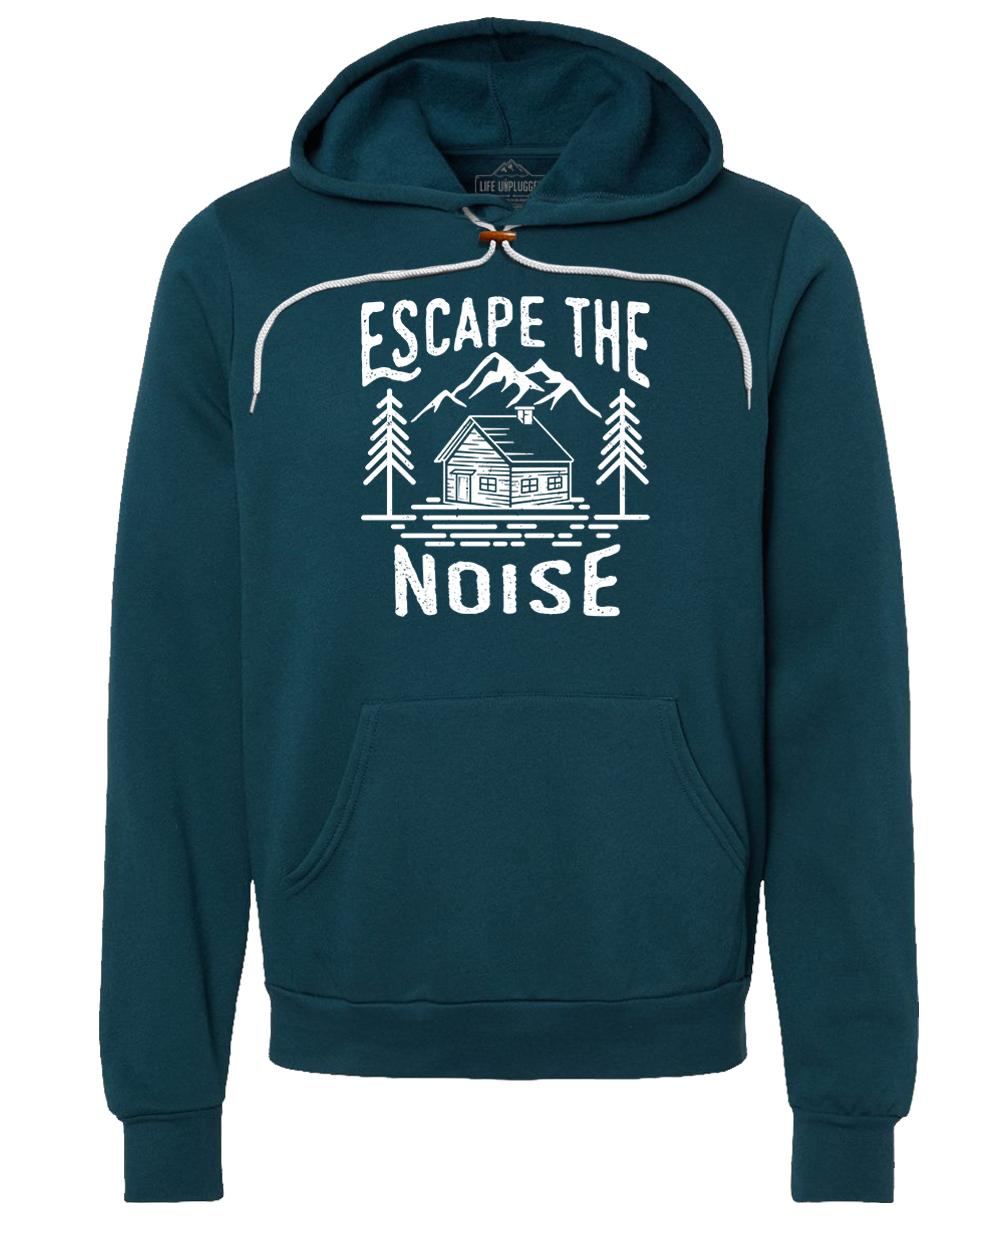 Escape The Noise Premium Super Soft Hooded Sweatshirt